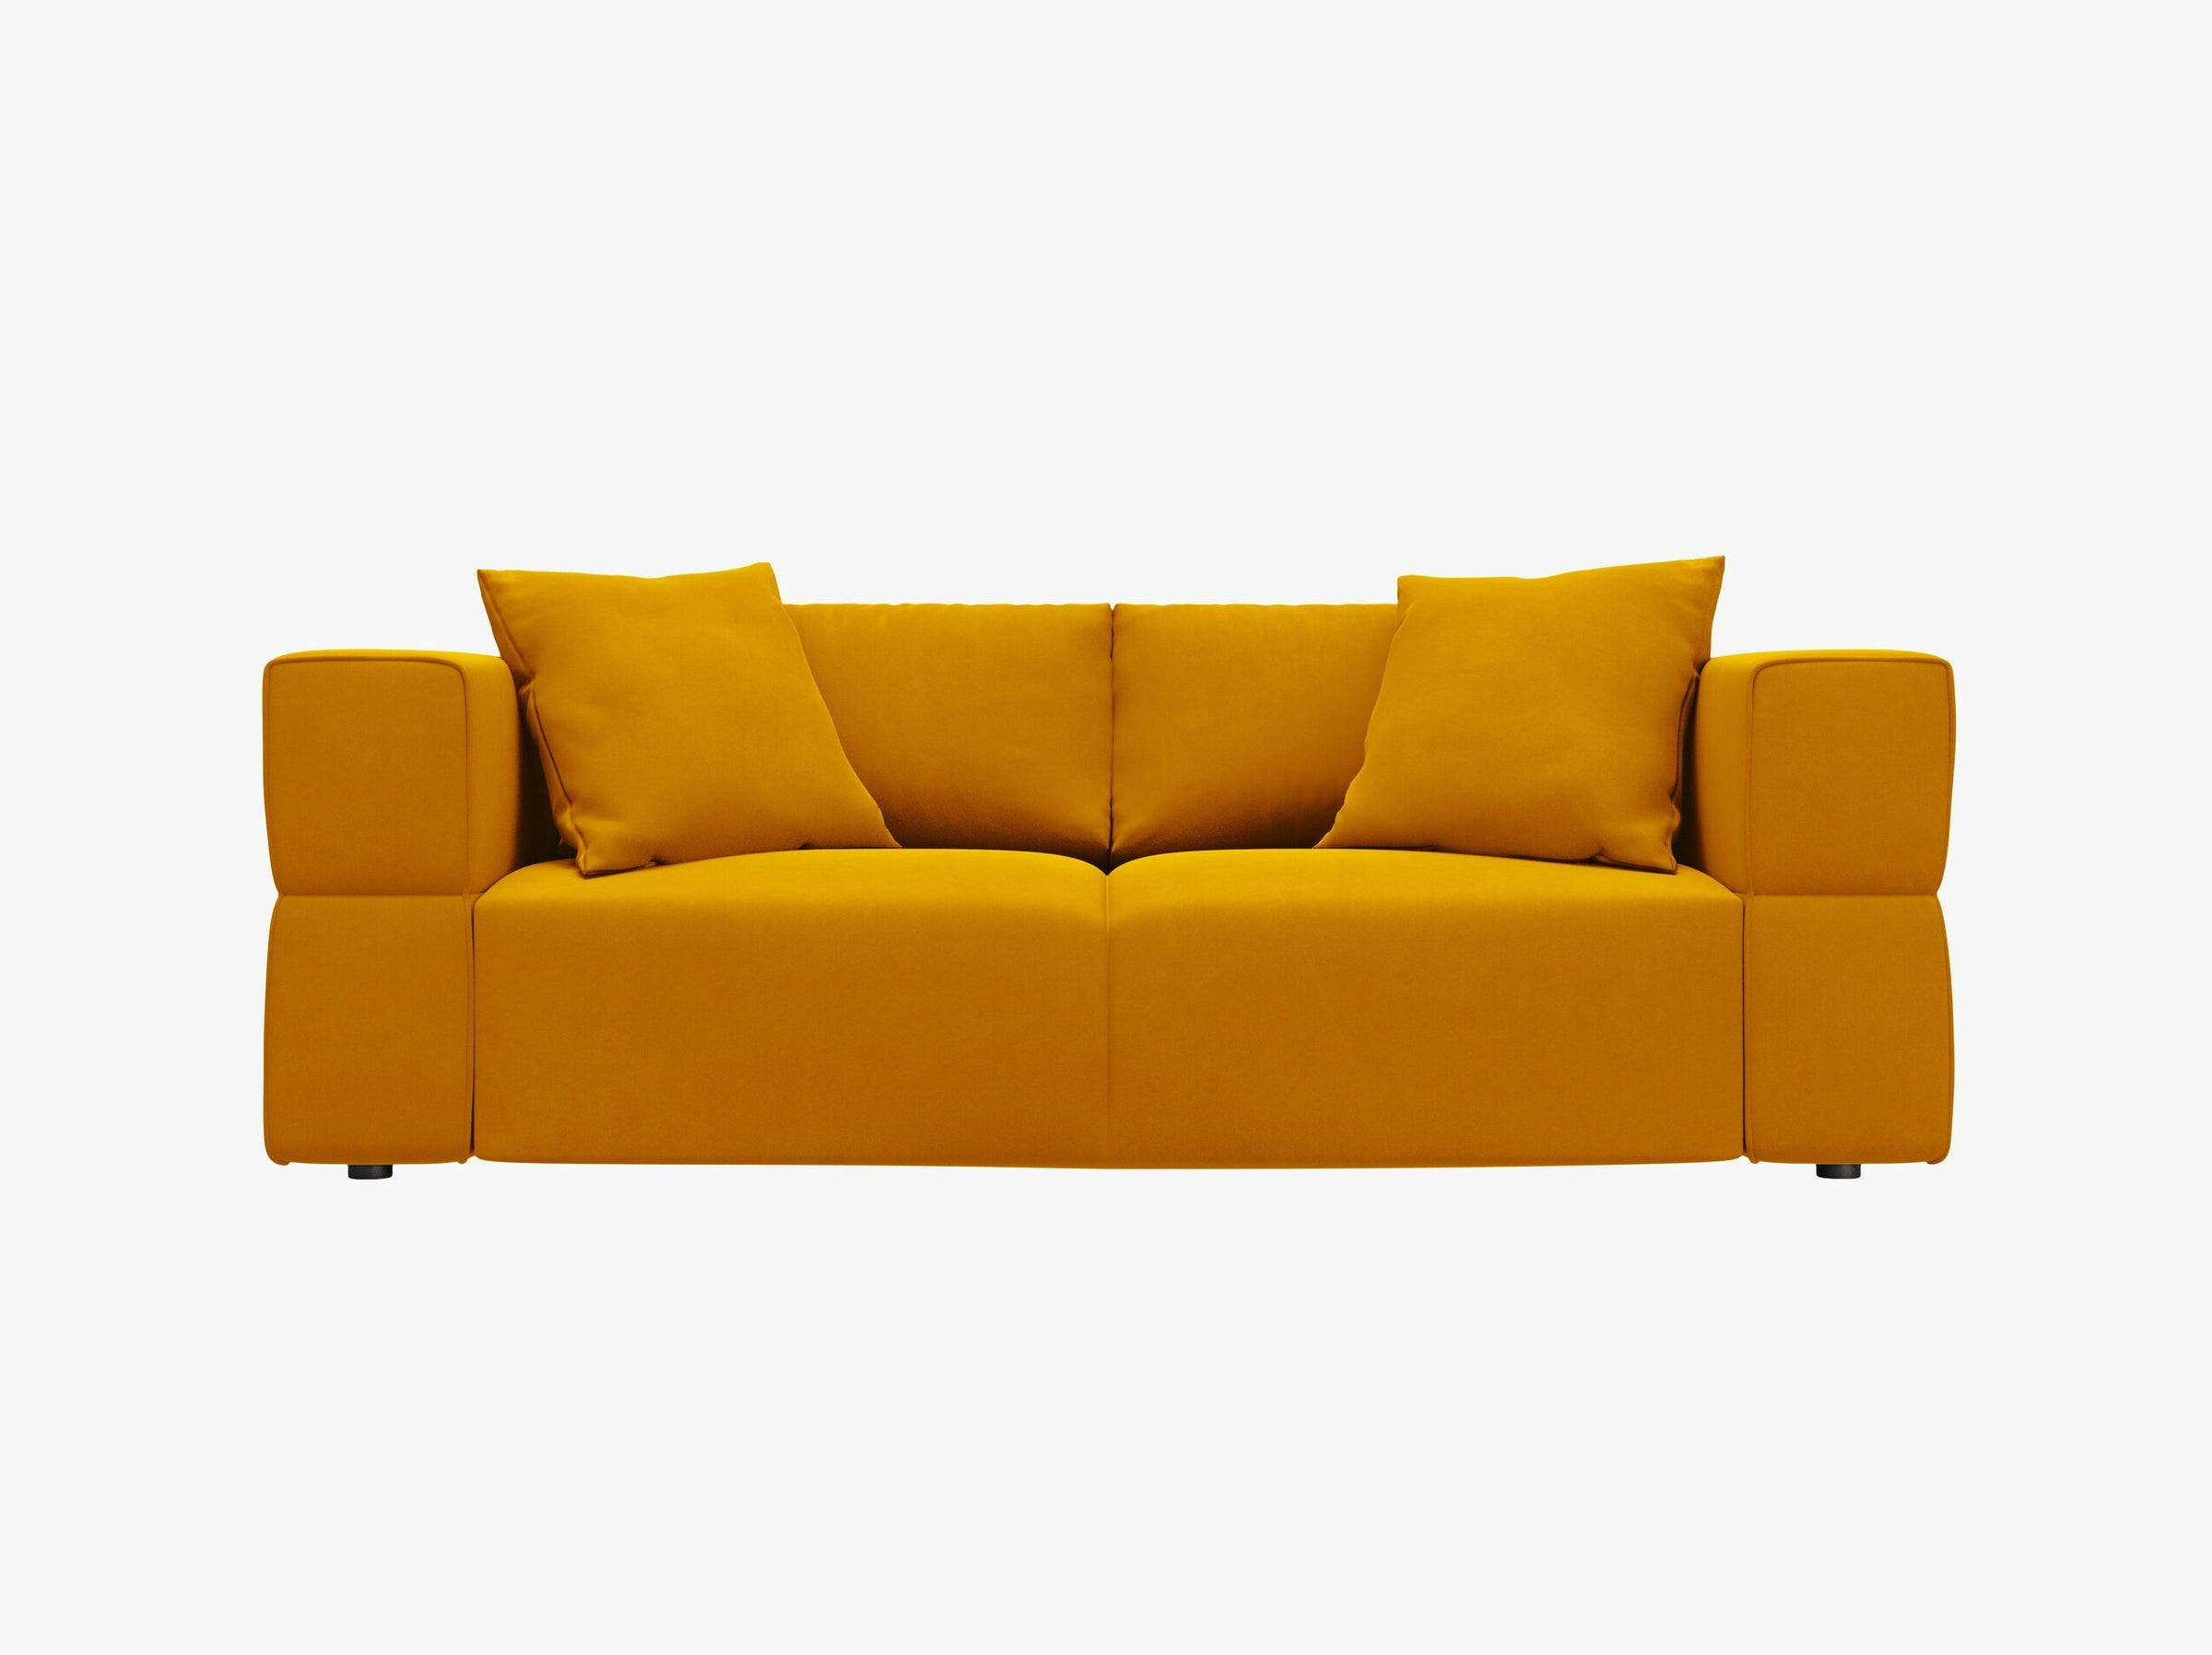 Tyra sofas velvet yellow